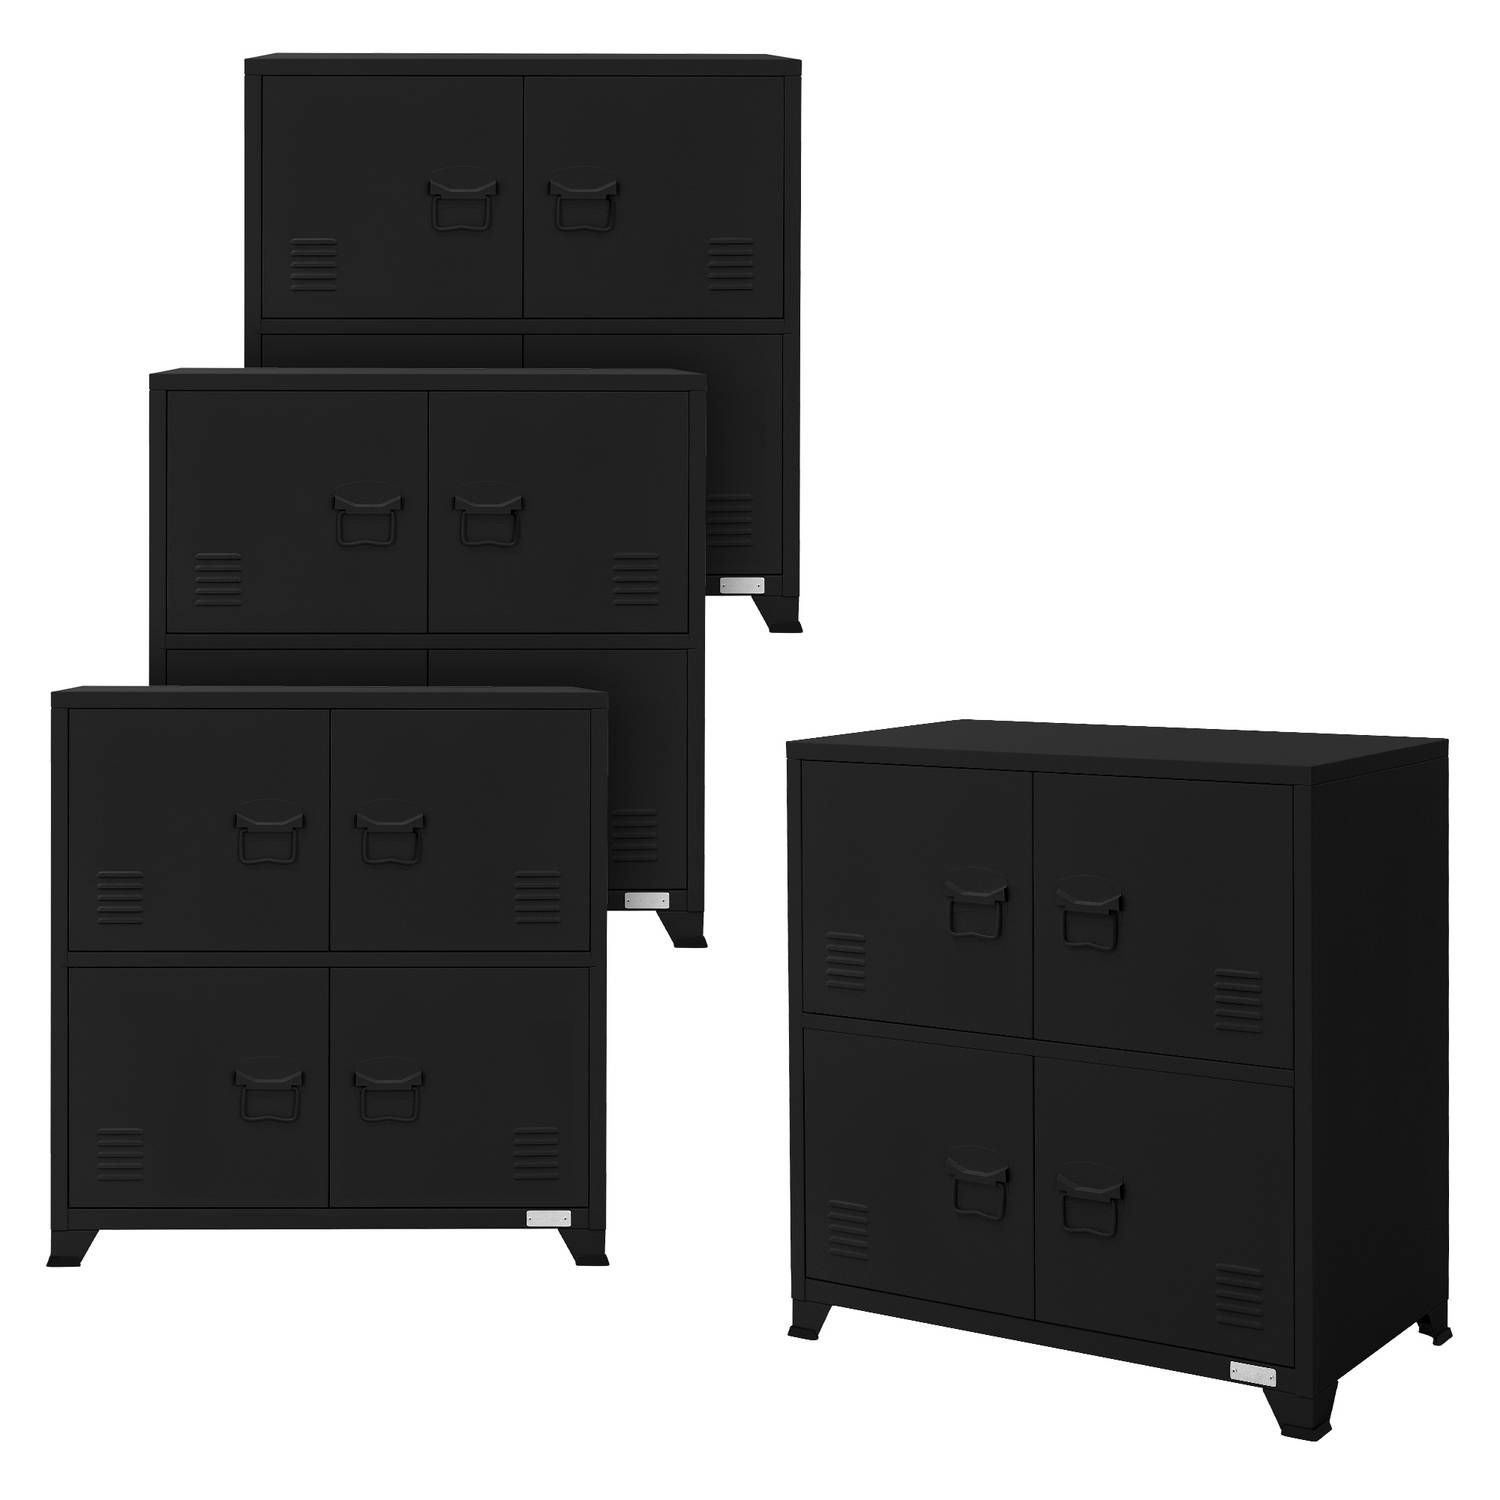 ML-Design set van 4 archiefkasten 75x40x80,5 cm zwart, staal, kantoorkast vrijstaand 4 poten, metale